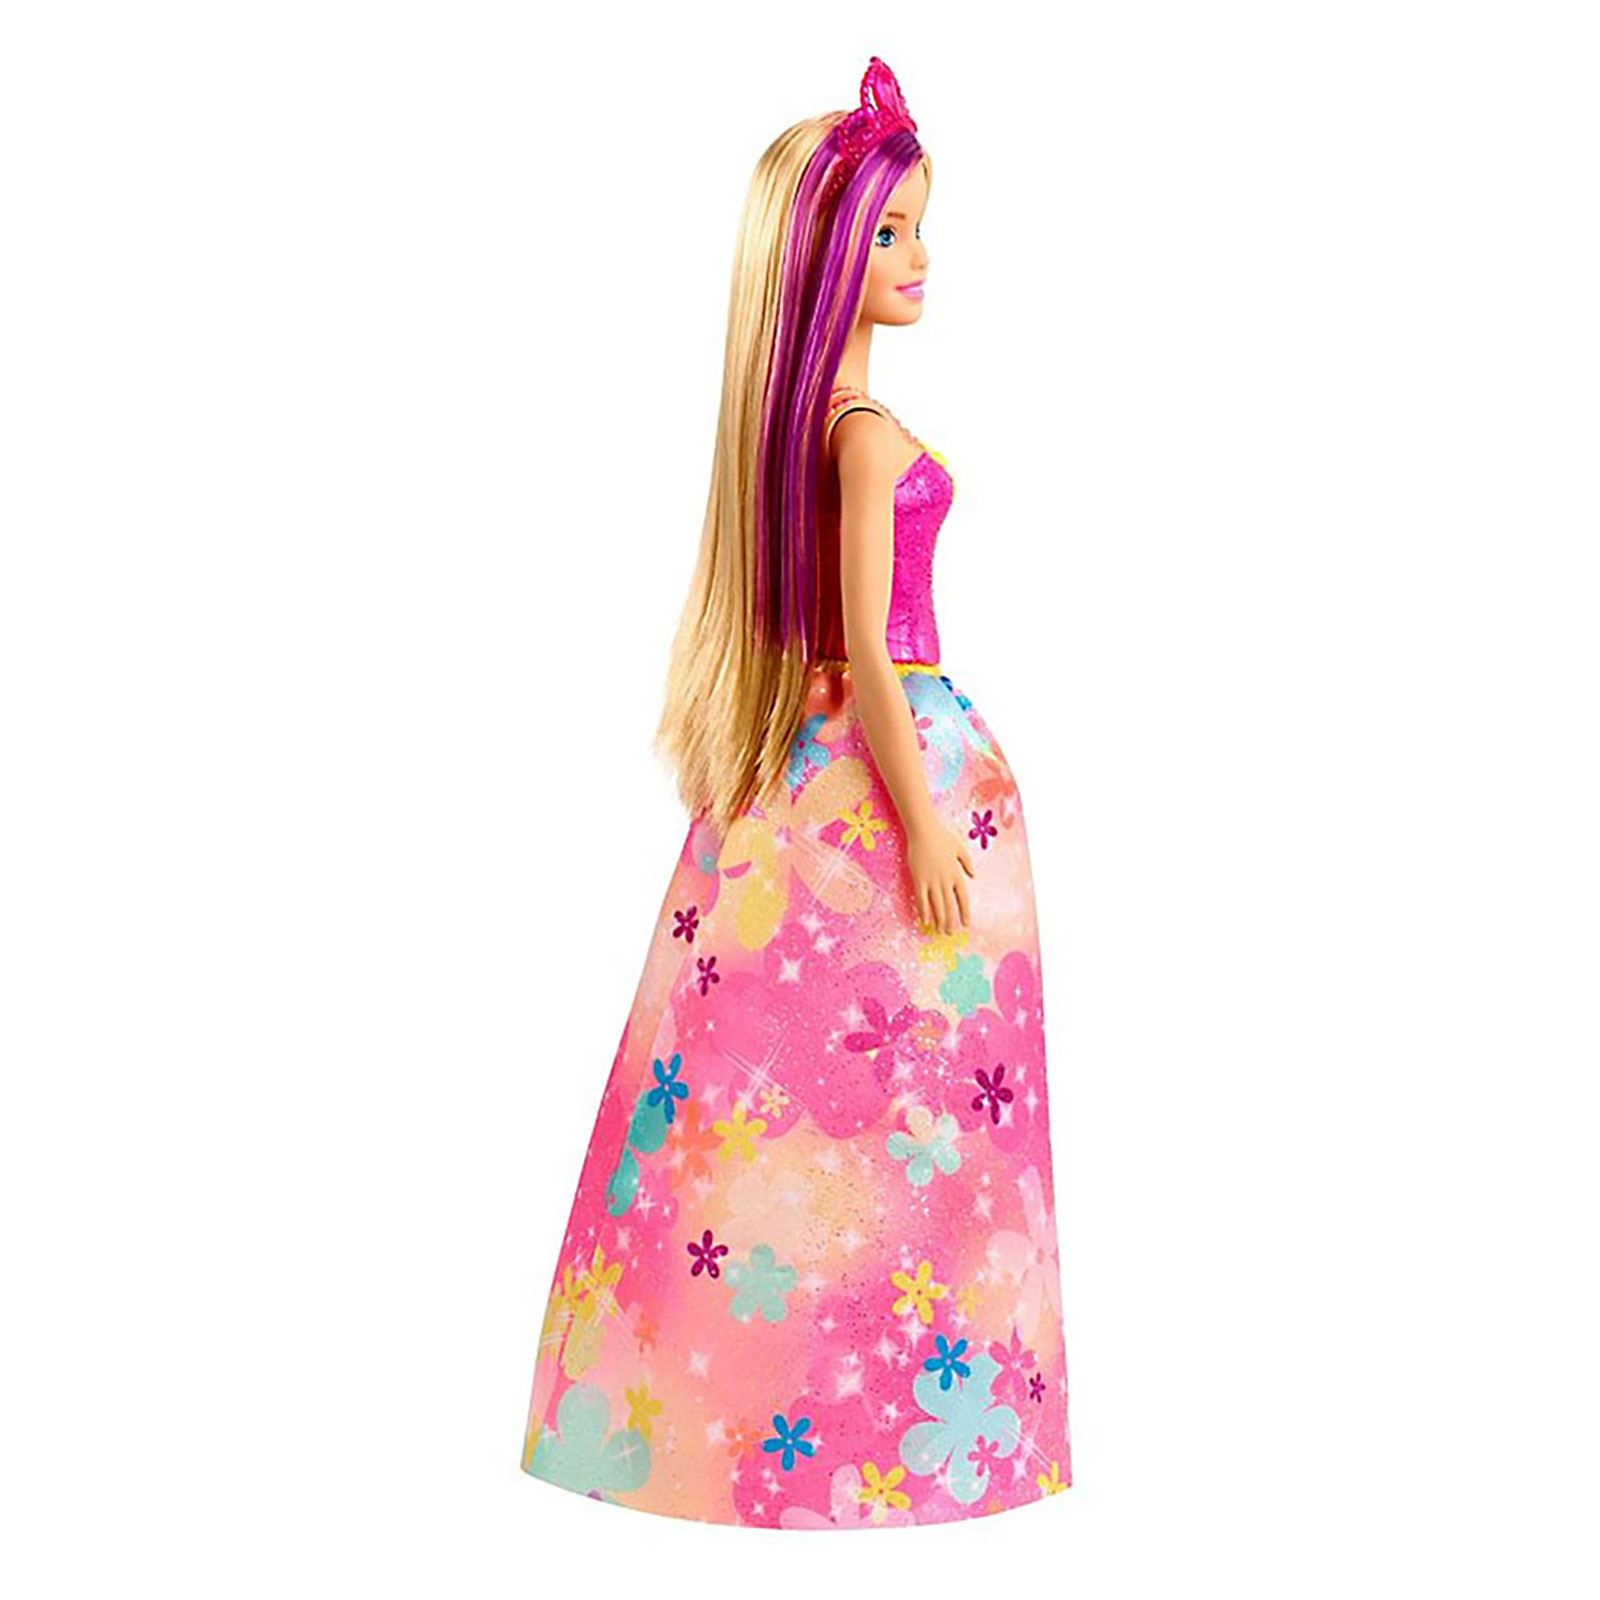 Barbie Dreamtopia Prenses Bebekler Fuşya